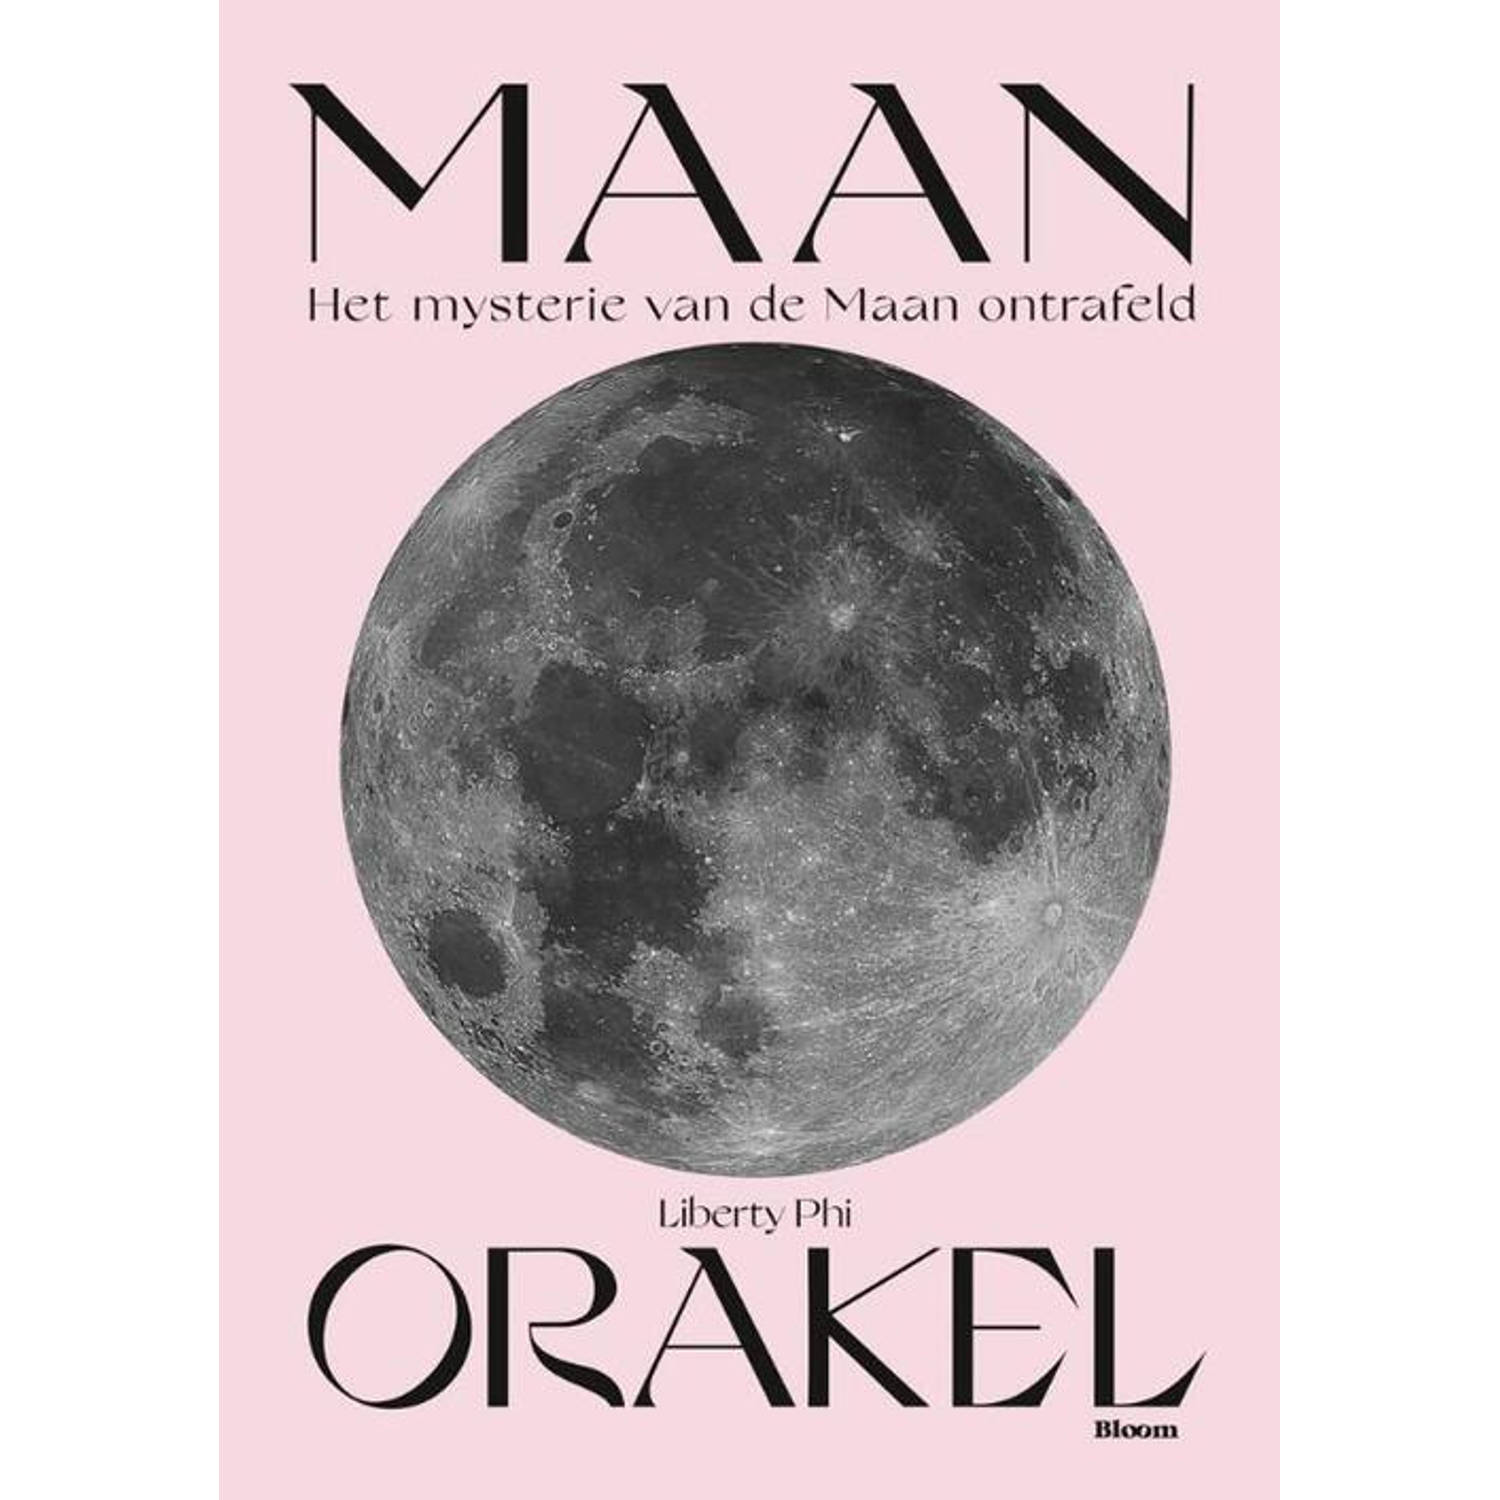 Maan Orakel Set